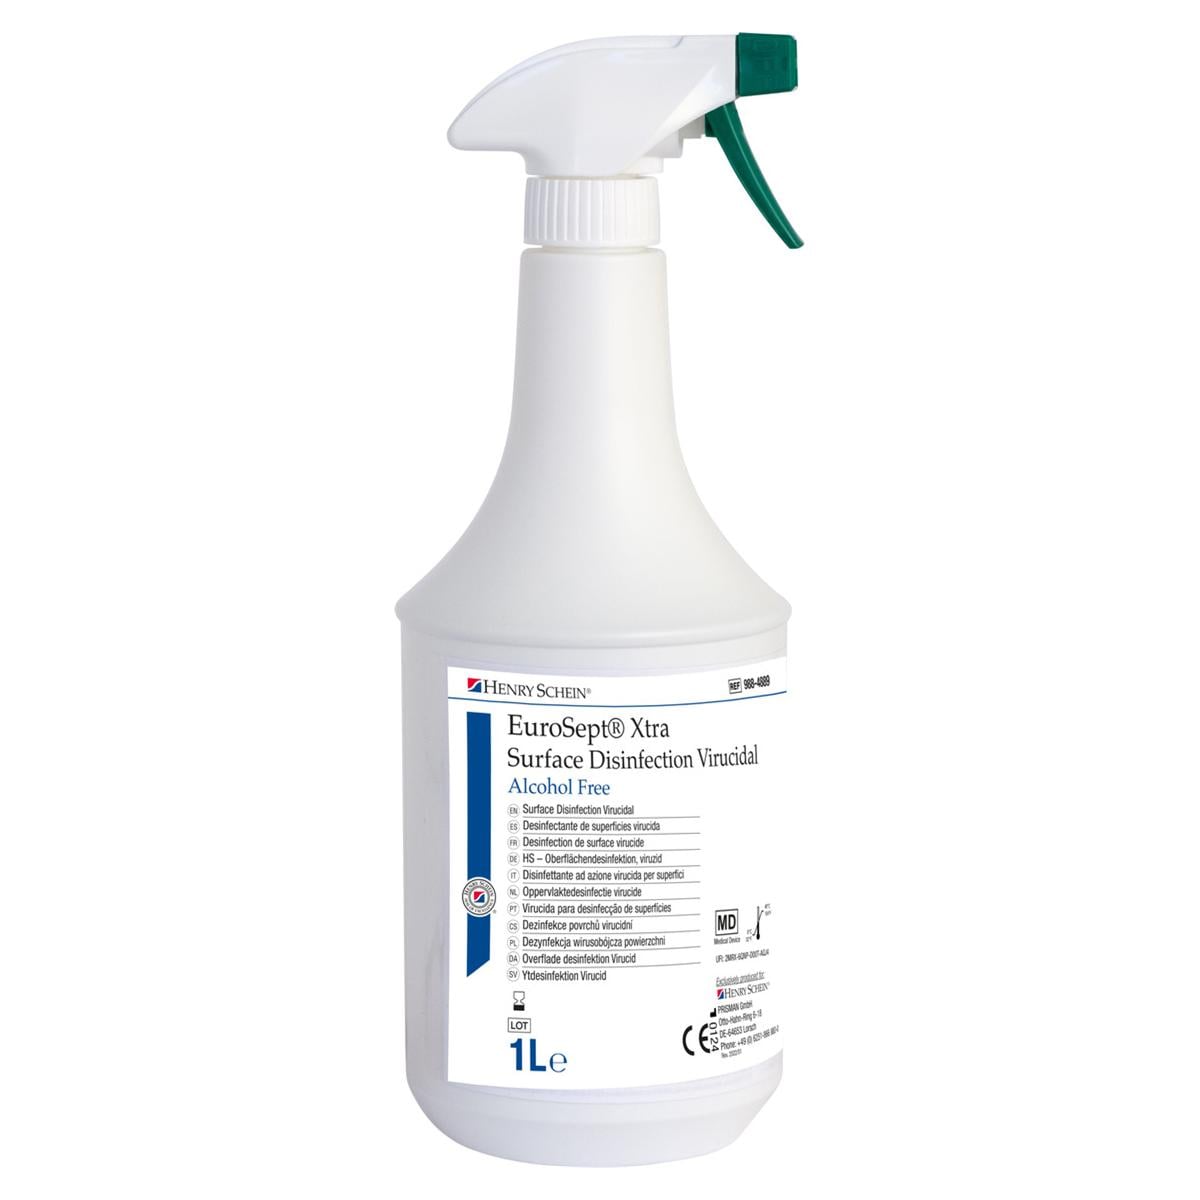 EuroSept Xtra Surface Disinfection Virucidal Alcohol Free - Flacon, 1 litre avec tte de pulvrisation